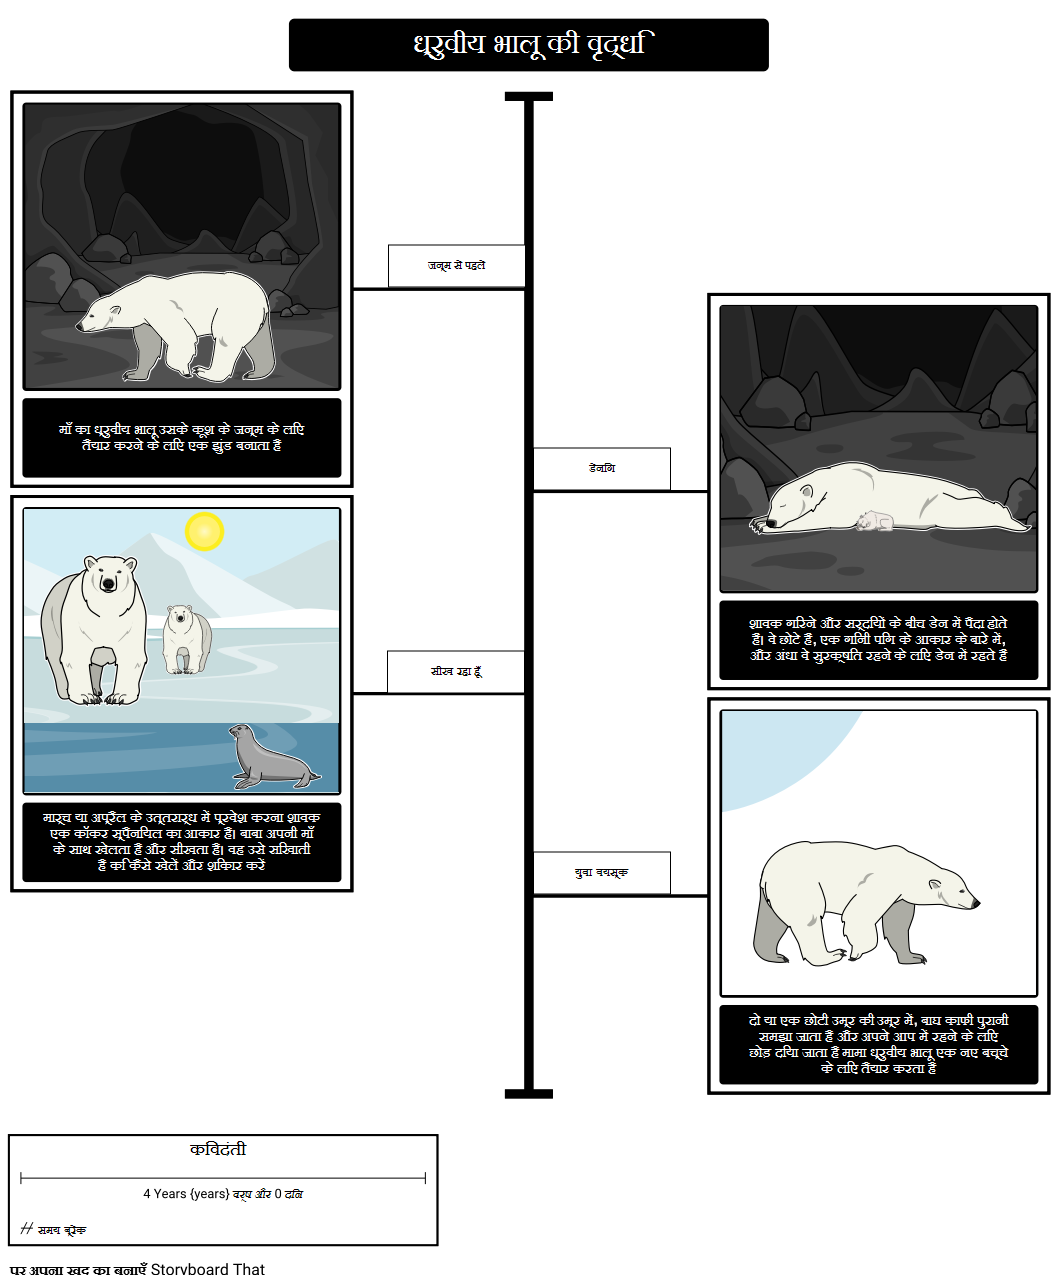 कहाँ ध्रुवीय भालू रहते हैं? ध्रुवीय भालू विकास